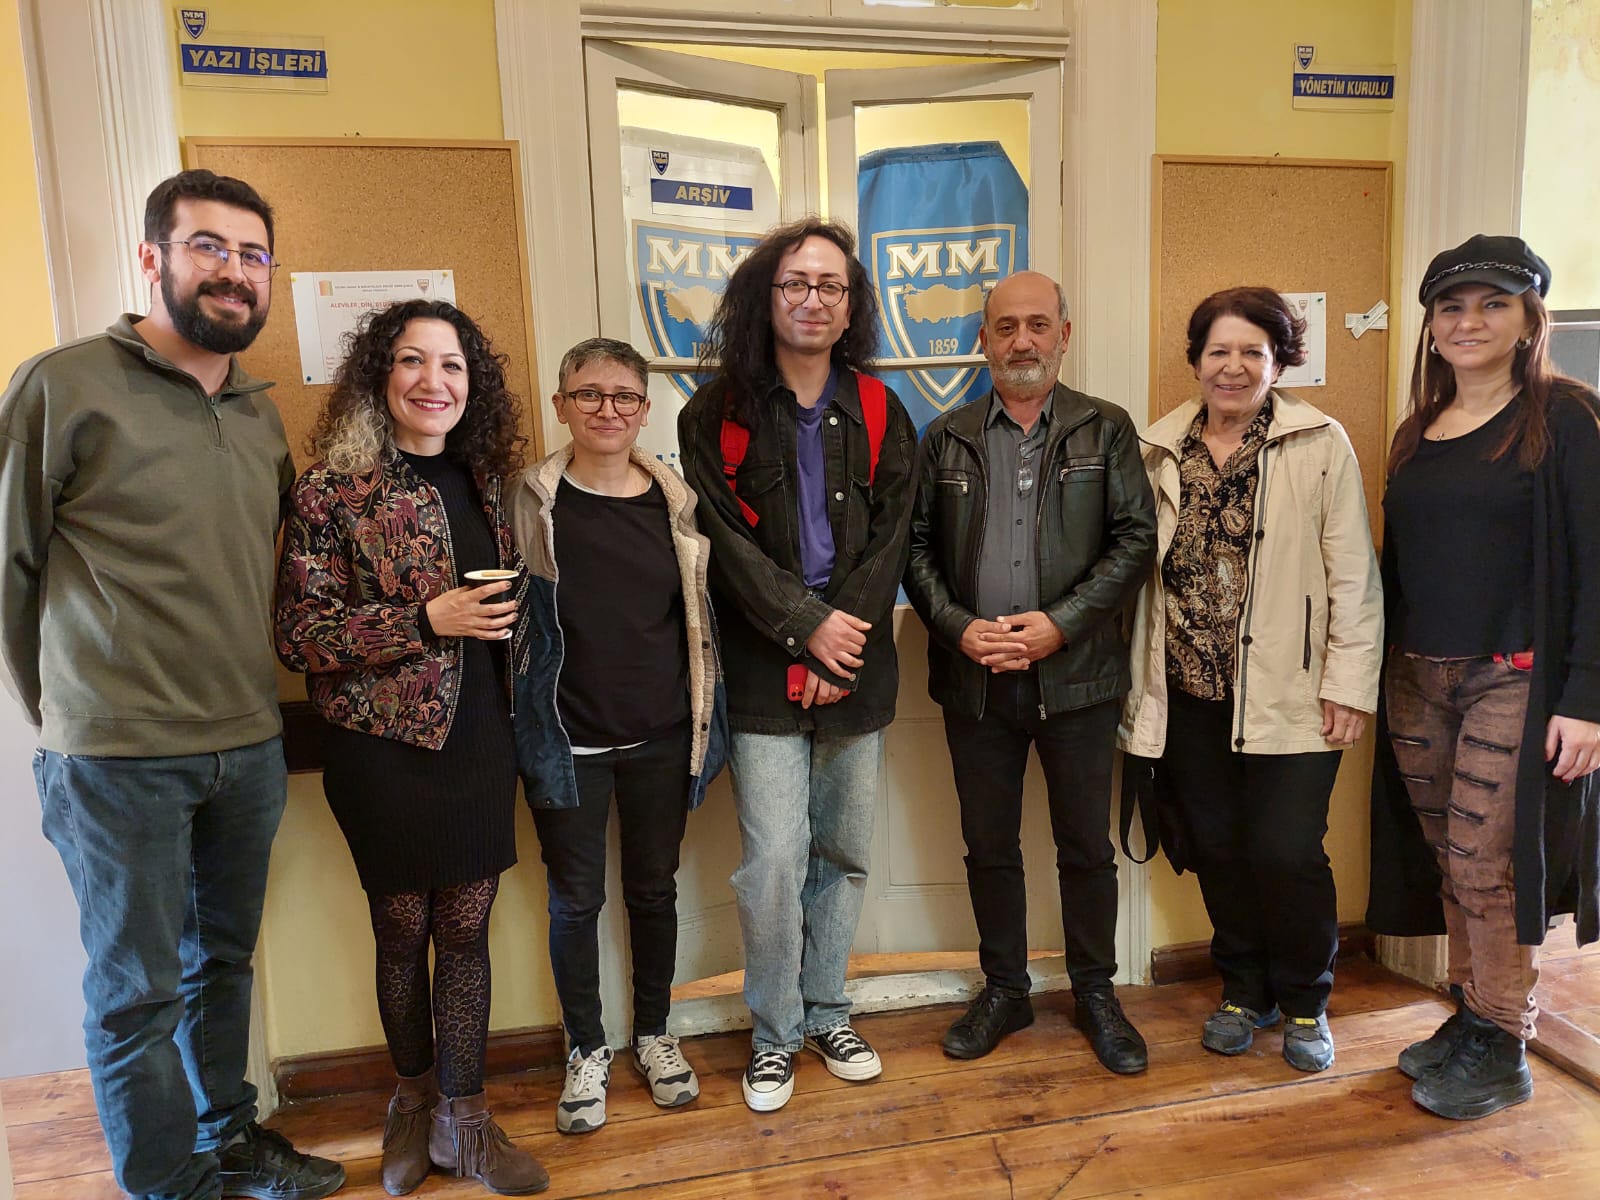 Kaos GL Derneği, Mülkiyeliler Birliği İzmir Şubesi'ni ziyaret etti | Kaos GL - LGBTİ+ Haber Portalı Haber